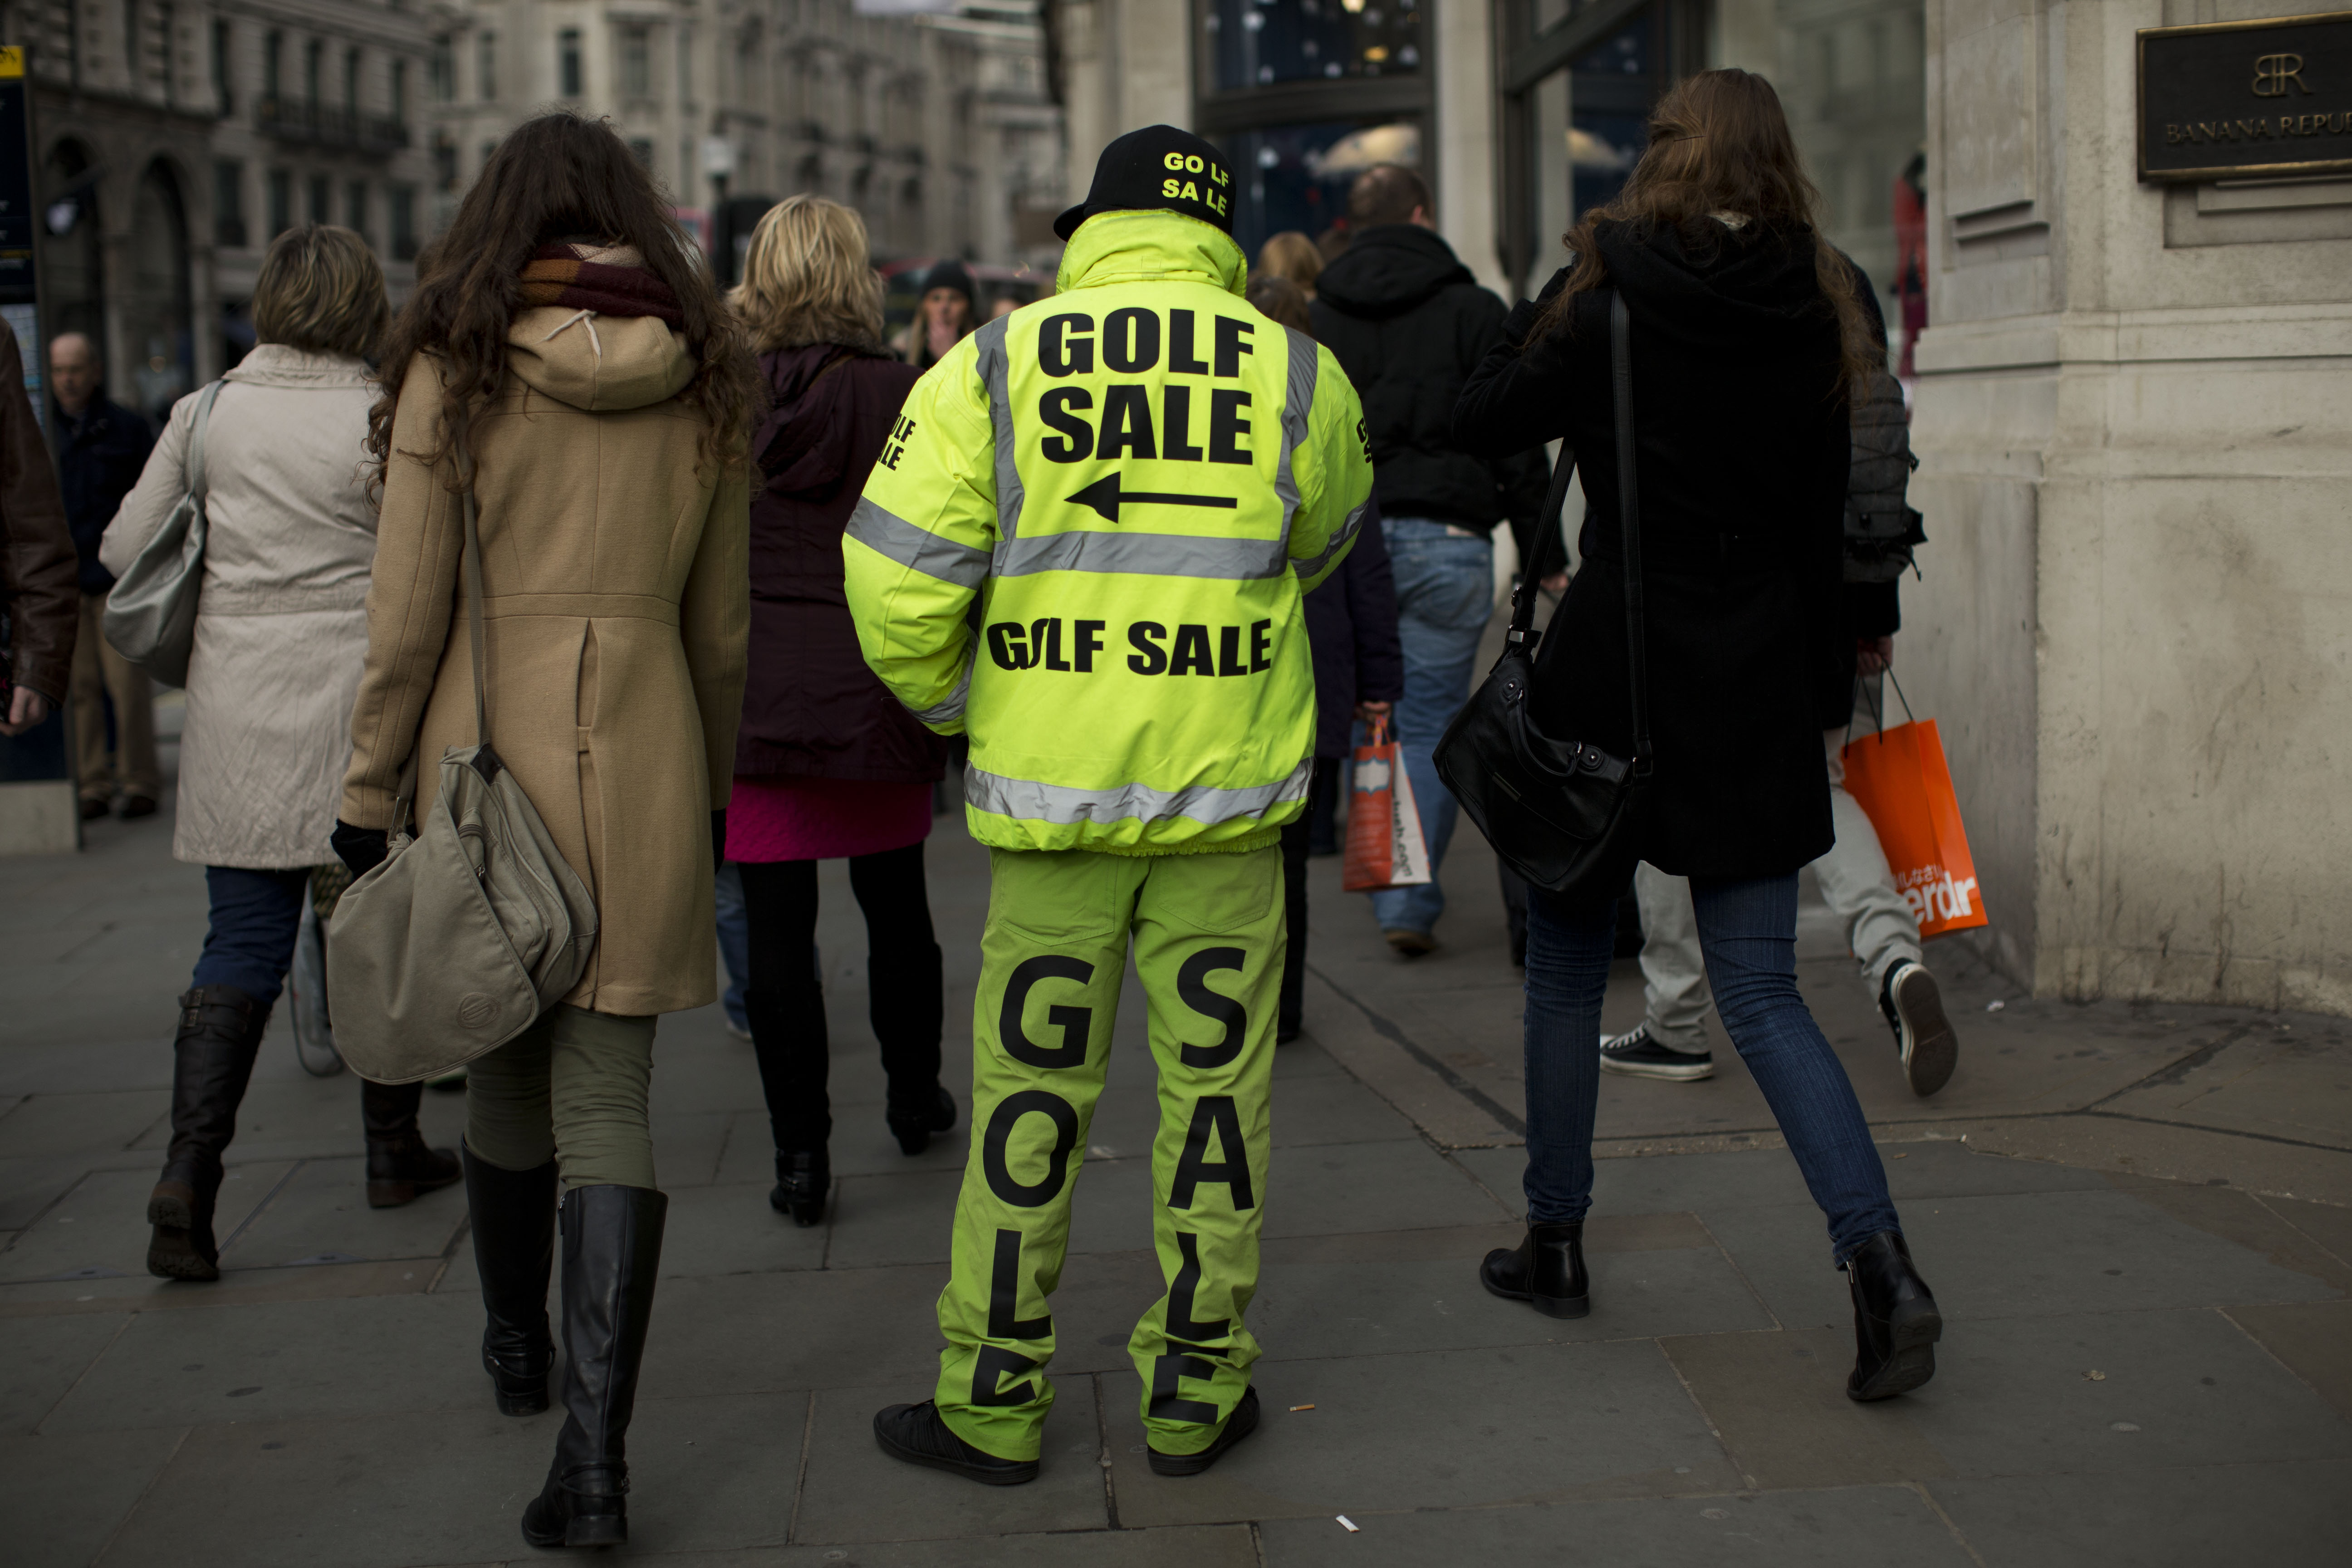 A man advertises a golf sale on Regent Street in London, Wednesday, Feb. 20, 2013. (AP Photo/Matt Dunham)